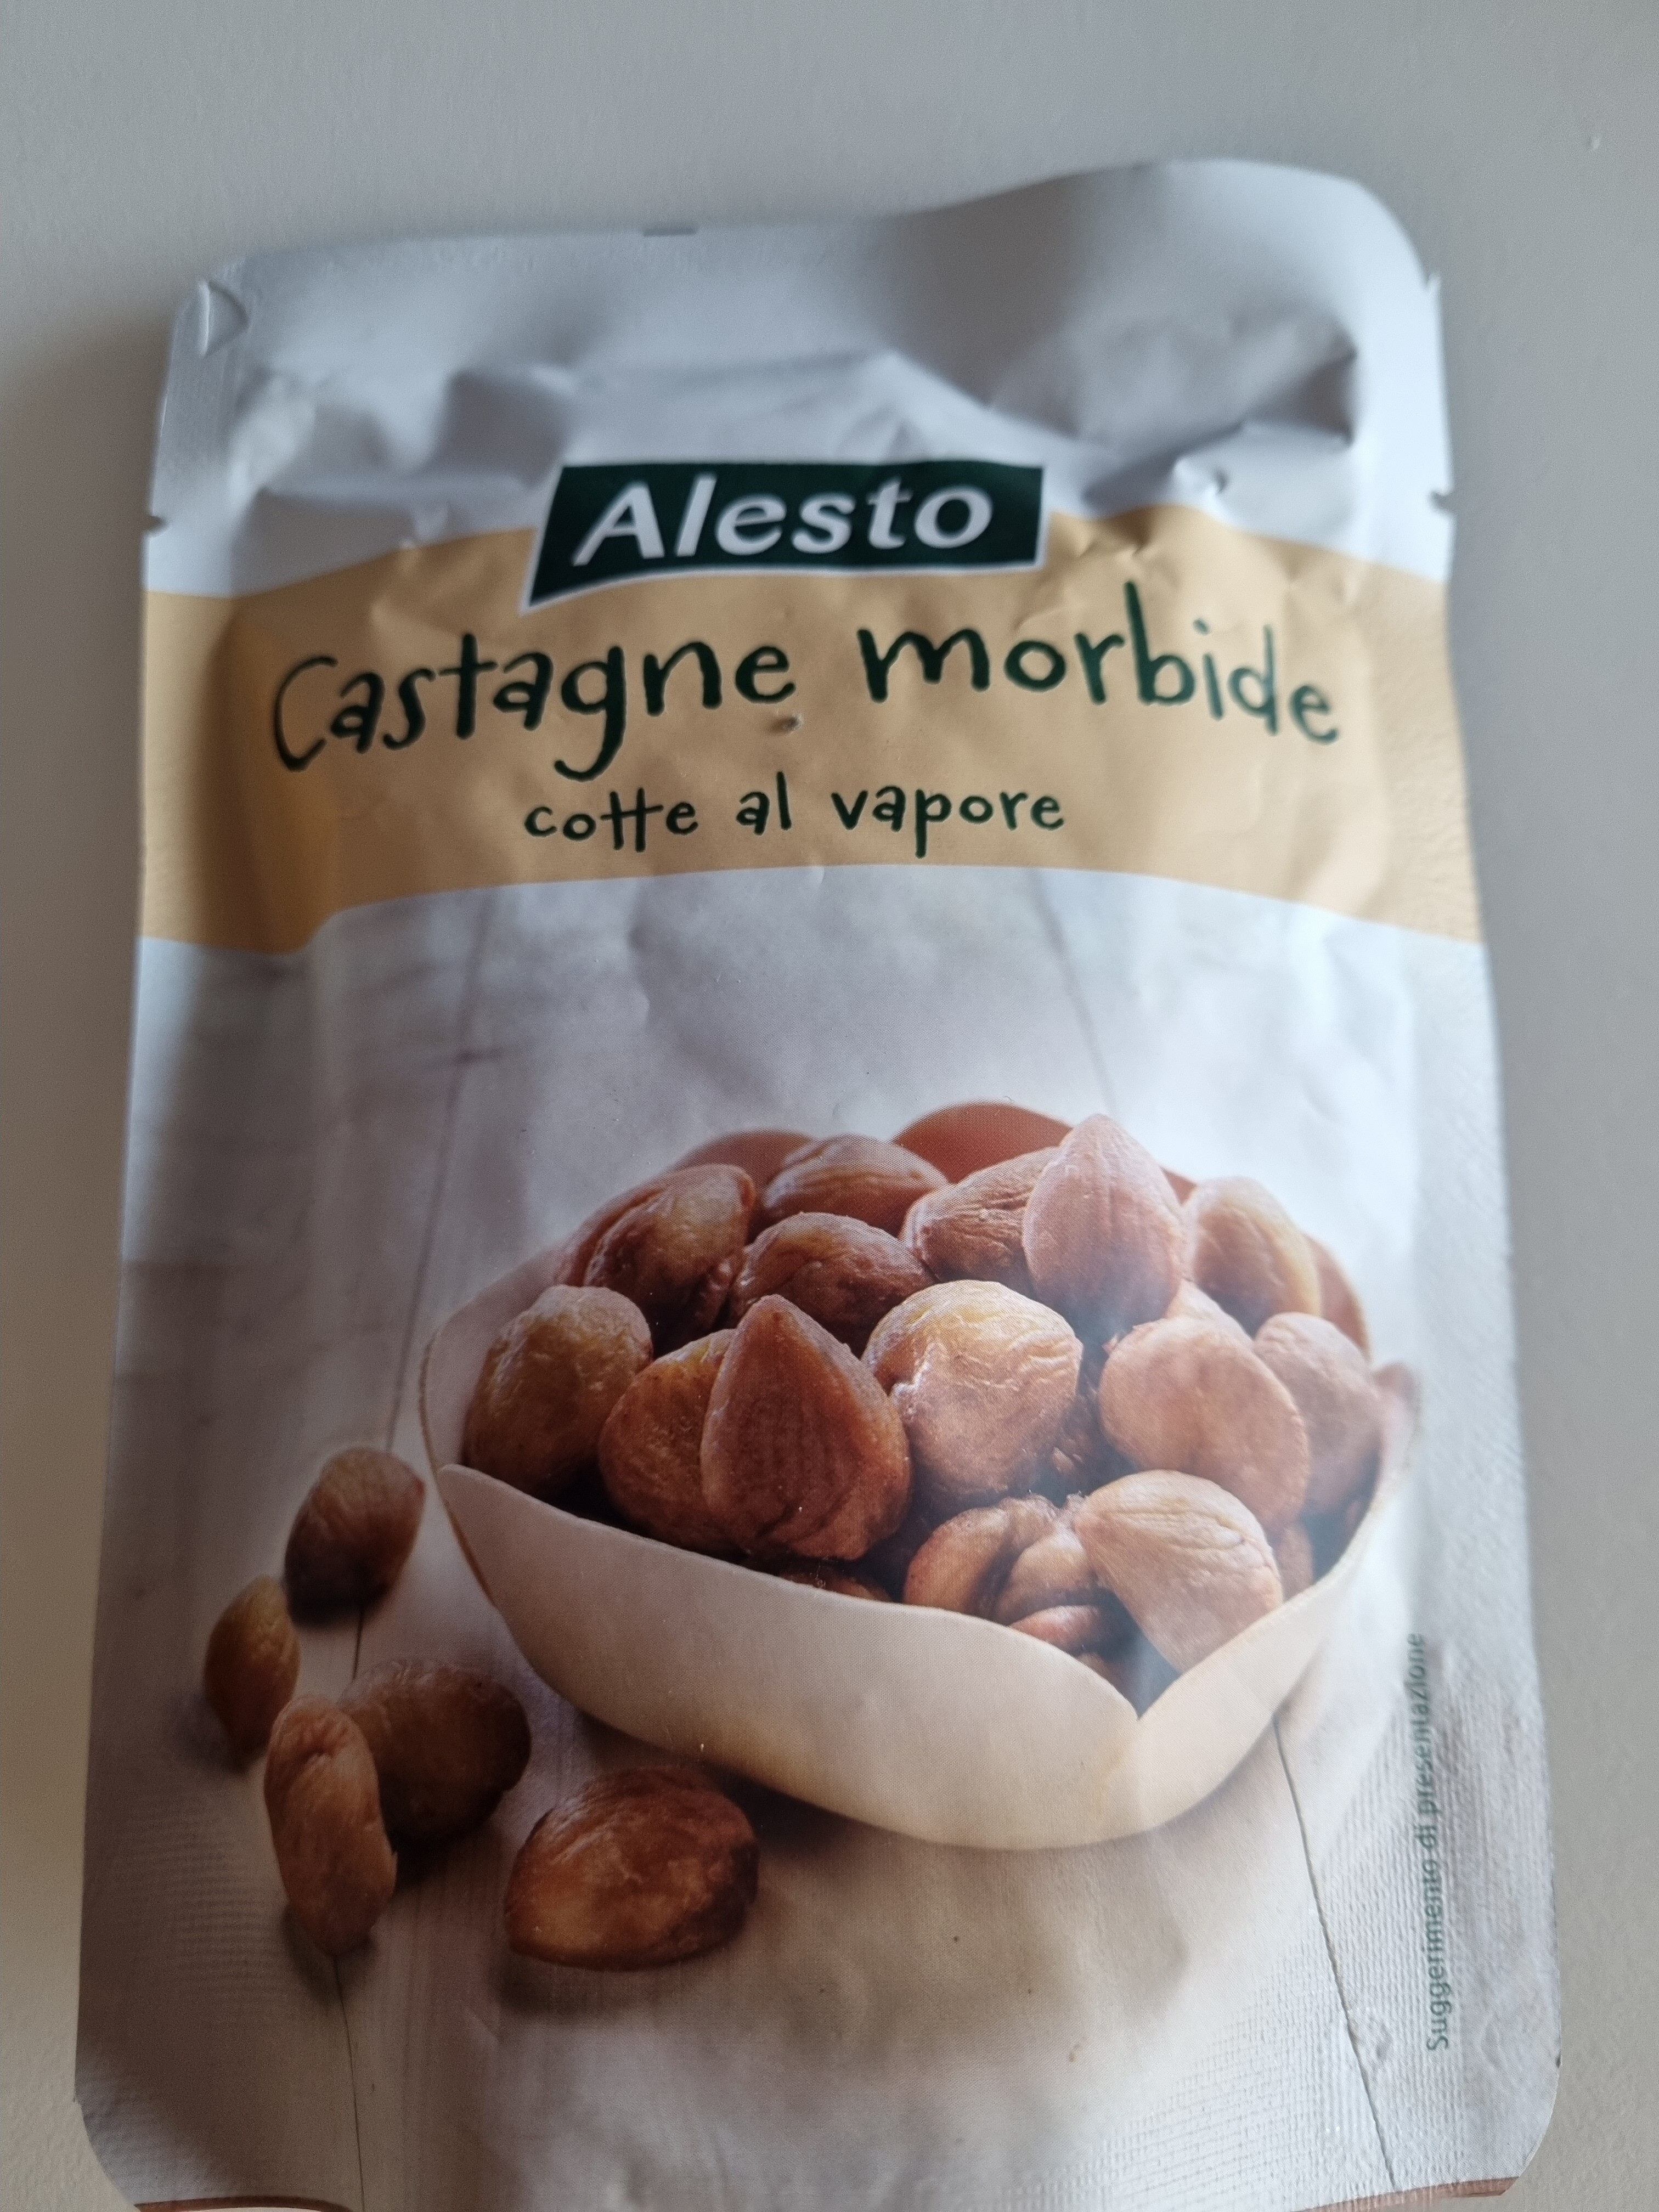 Castagne morbide - Product - it